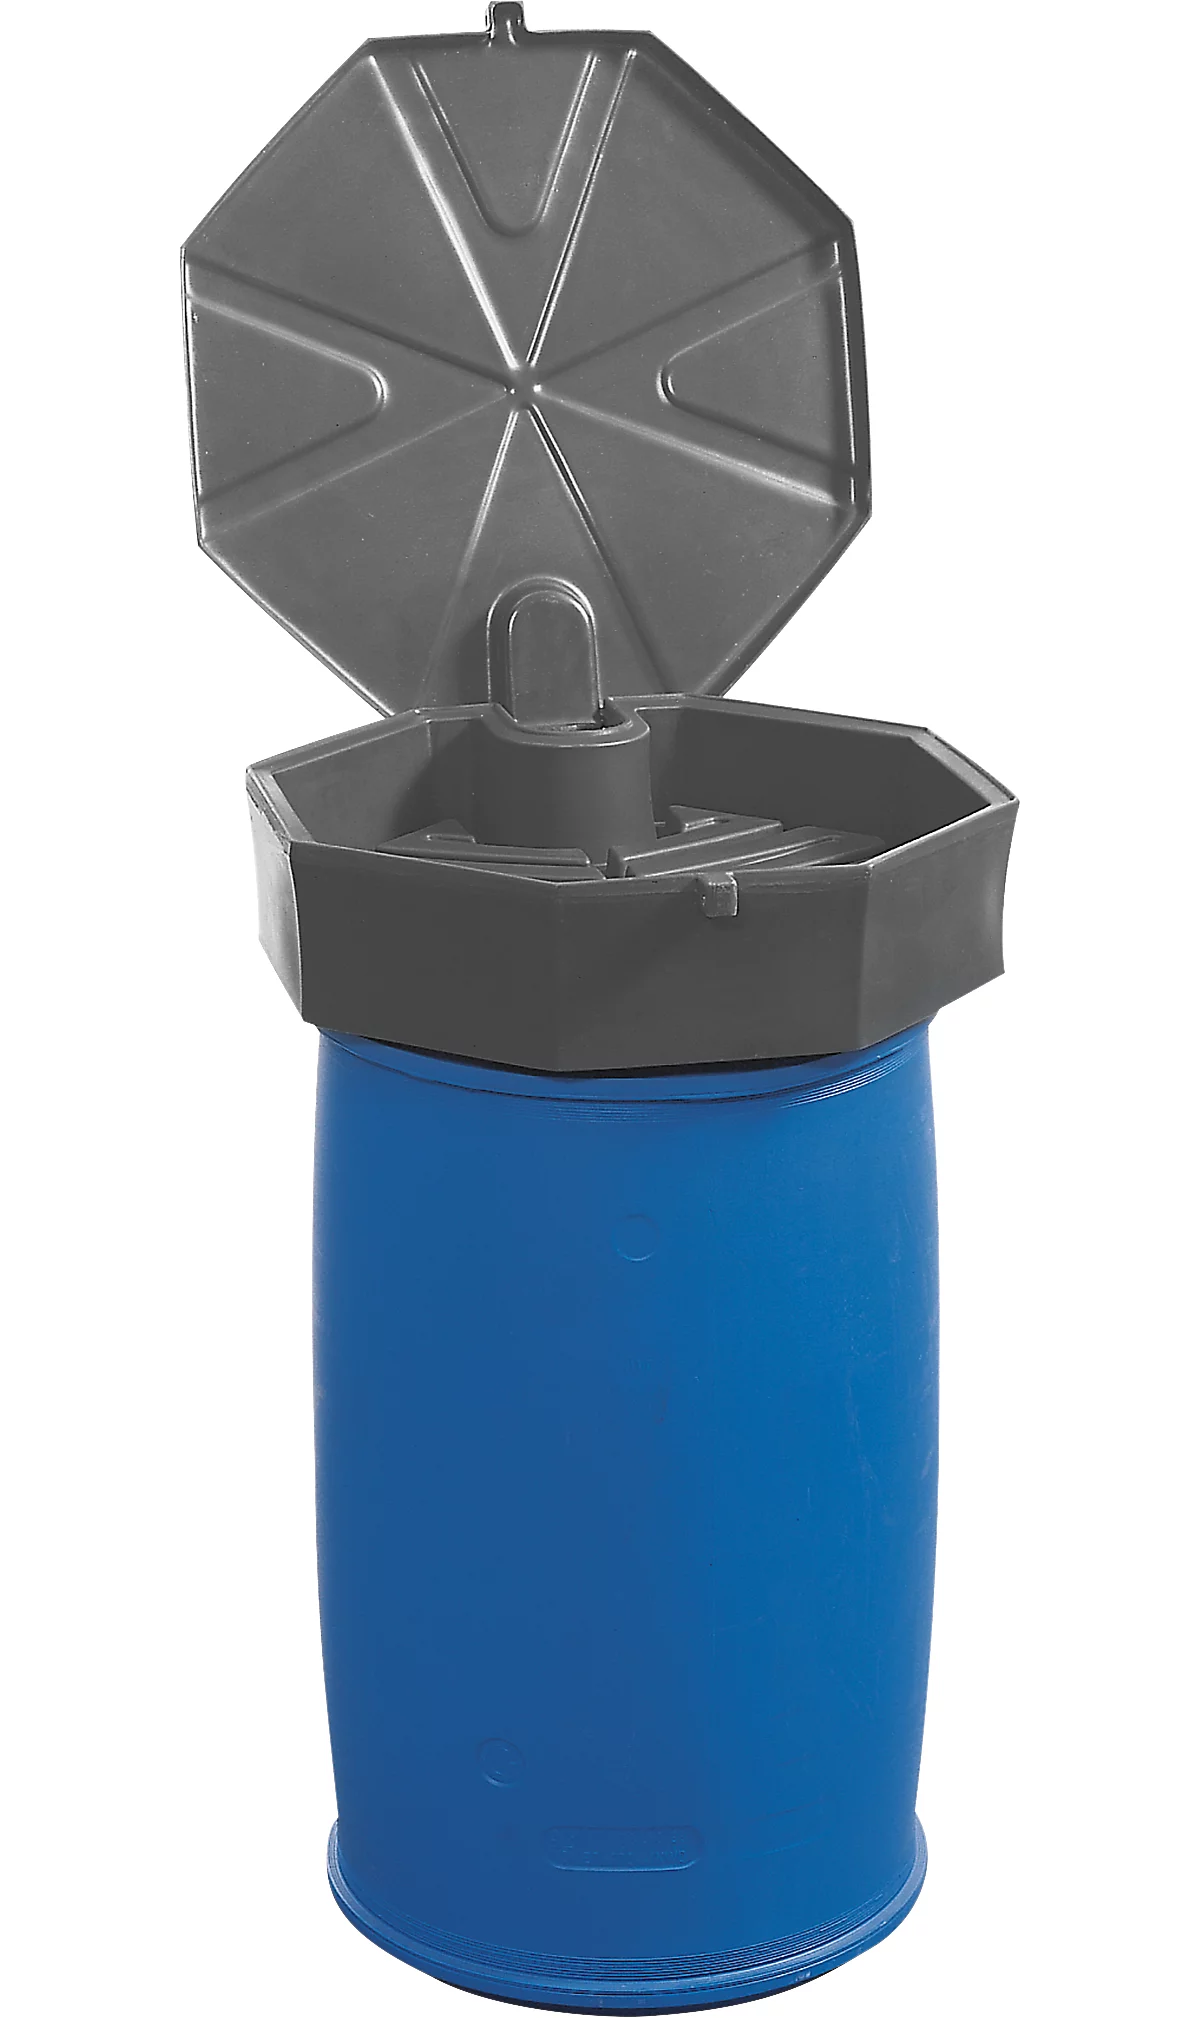 Fasstrichter, Polyethylen, blau, Ø 670 x H 230 mm, Füllvolumen 22 l, mit Deckel